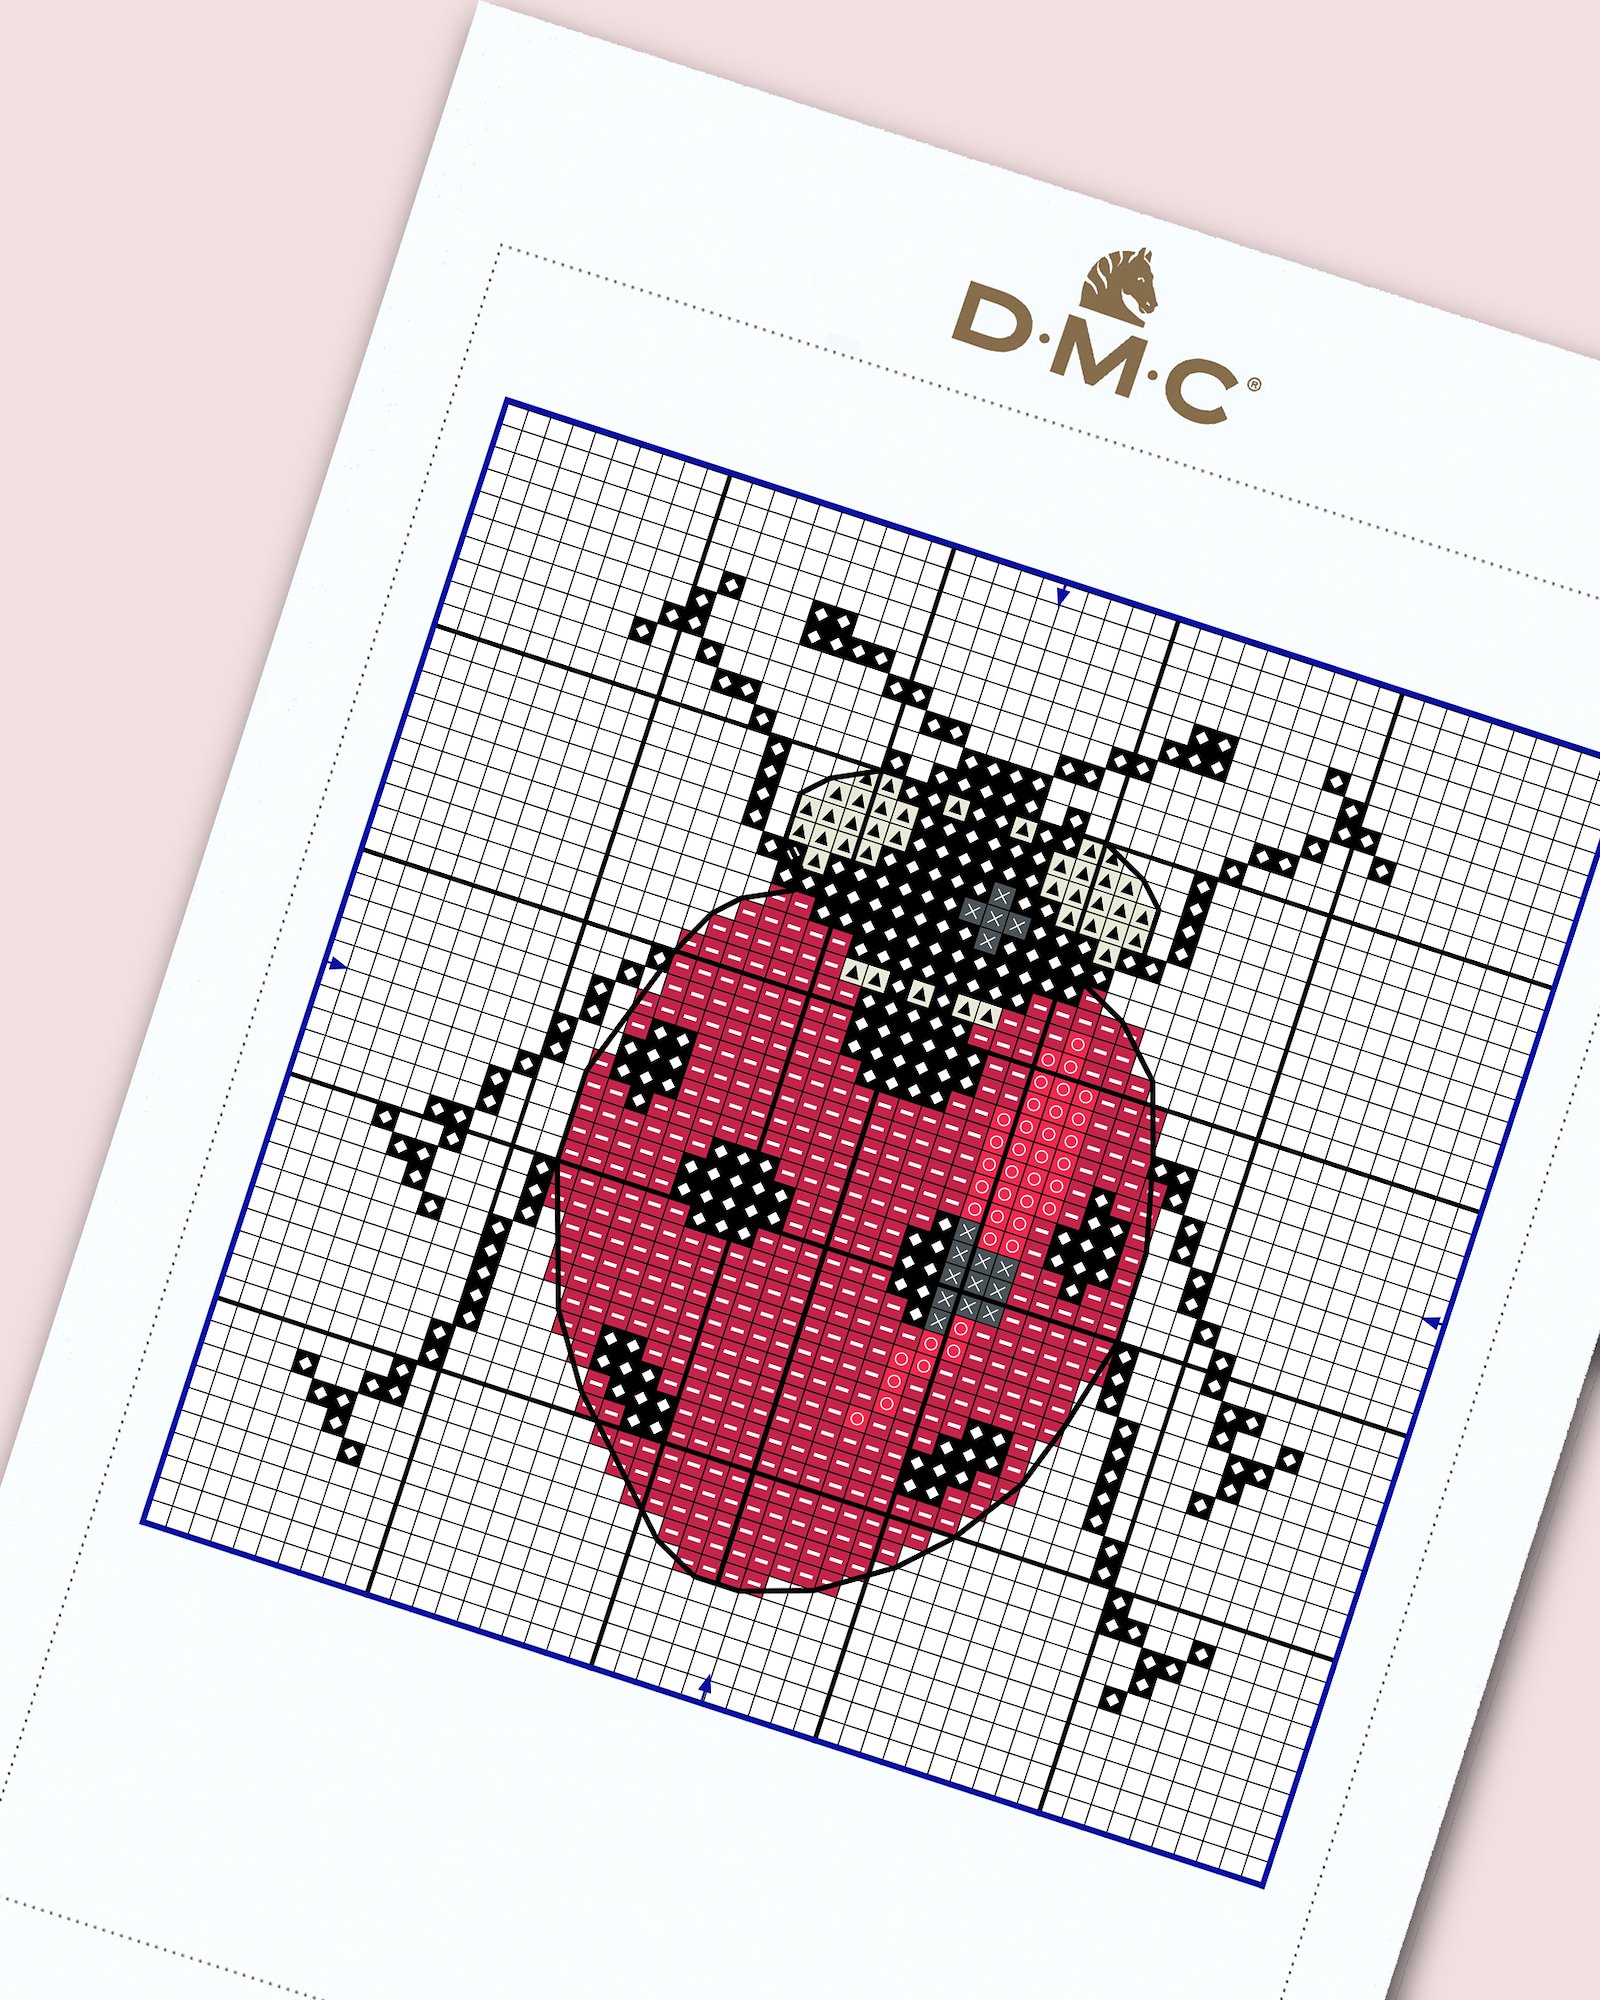 DMC Kreuzstich: Seven spot Ladybird DIY1534_image.jpg